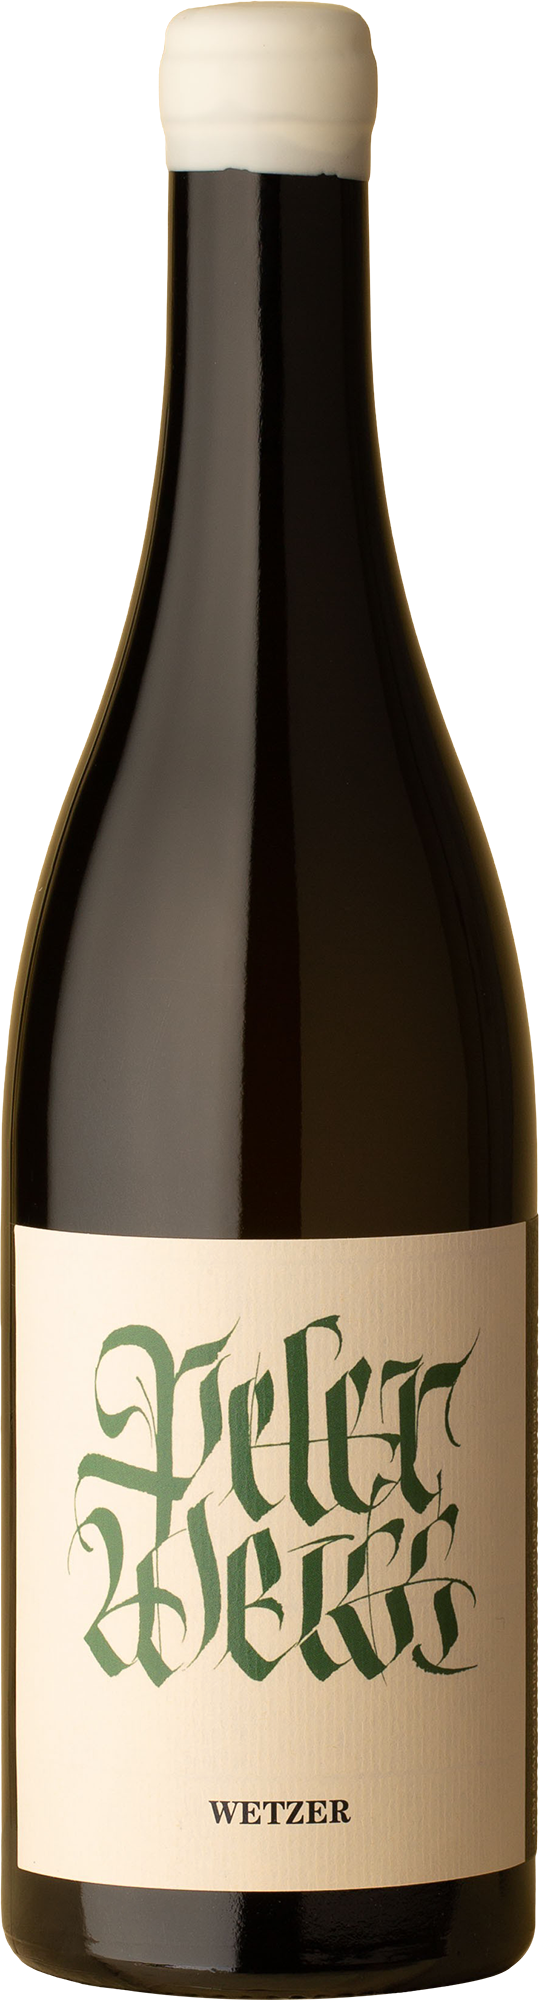 Peter Wetzer - Soproni Zöldveltelini Grüner Veltliner 2020 White Wine